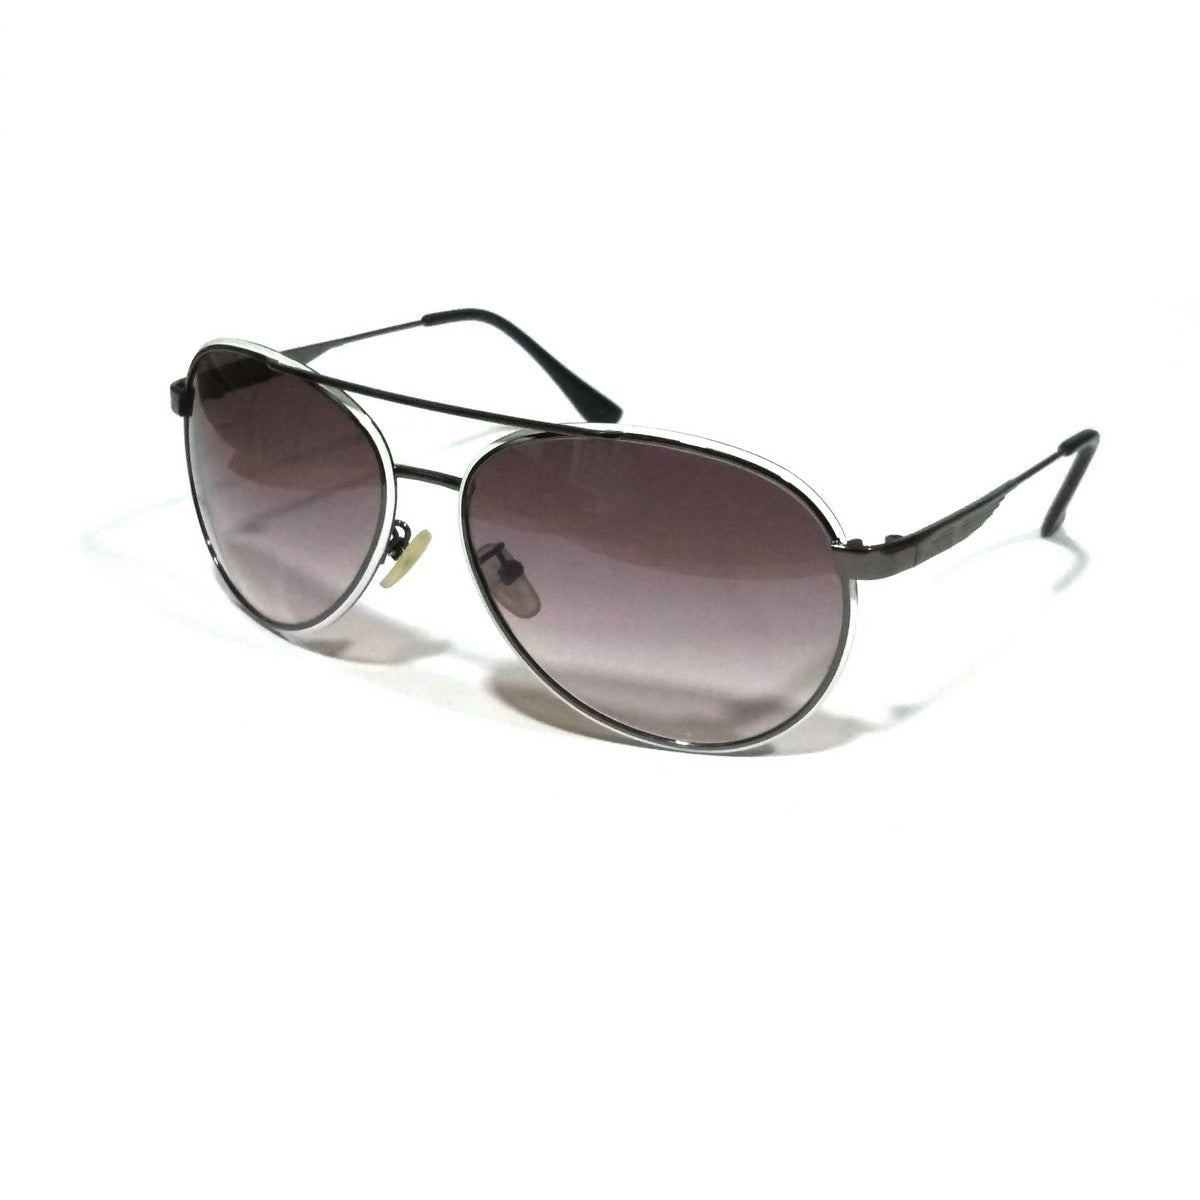 Best Selling Aviators Sunglasses For Men Women GDN2002